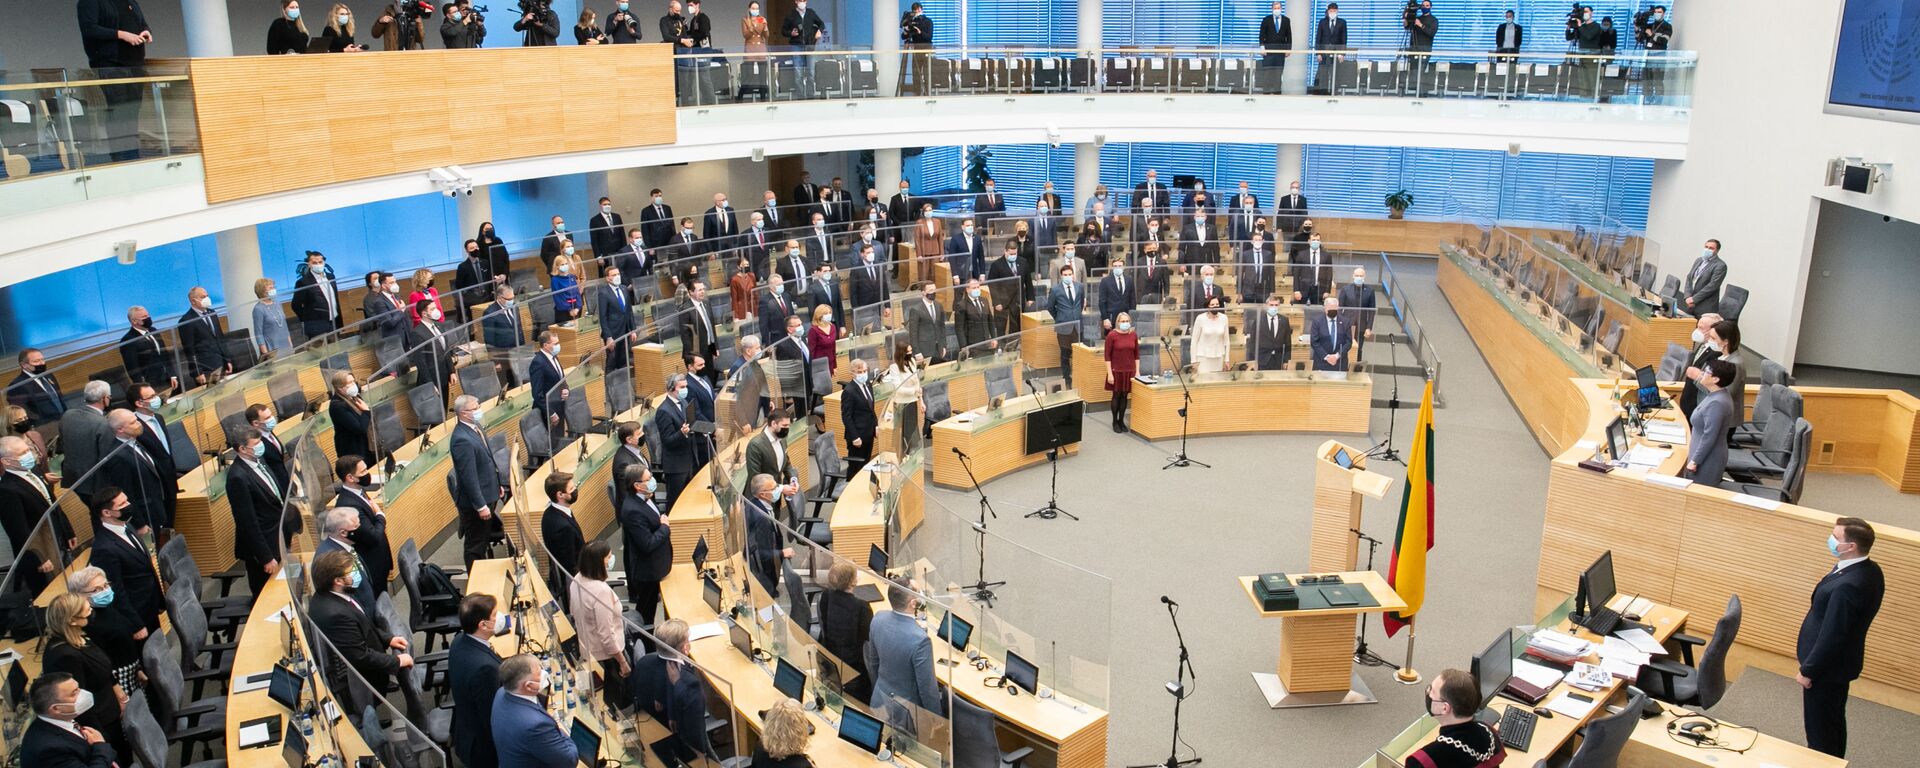 Первое заседание весенней сессии Сейма Литвы, 10 марта 2021 - Sputnik Lietuva, 1920, 13.05.2021